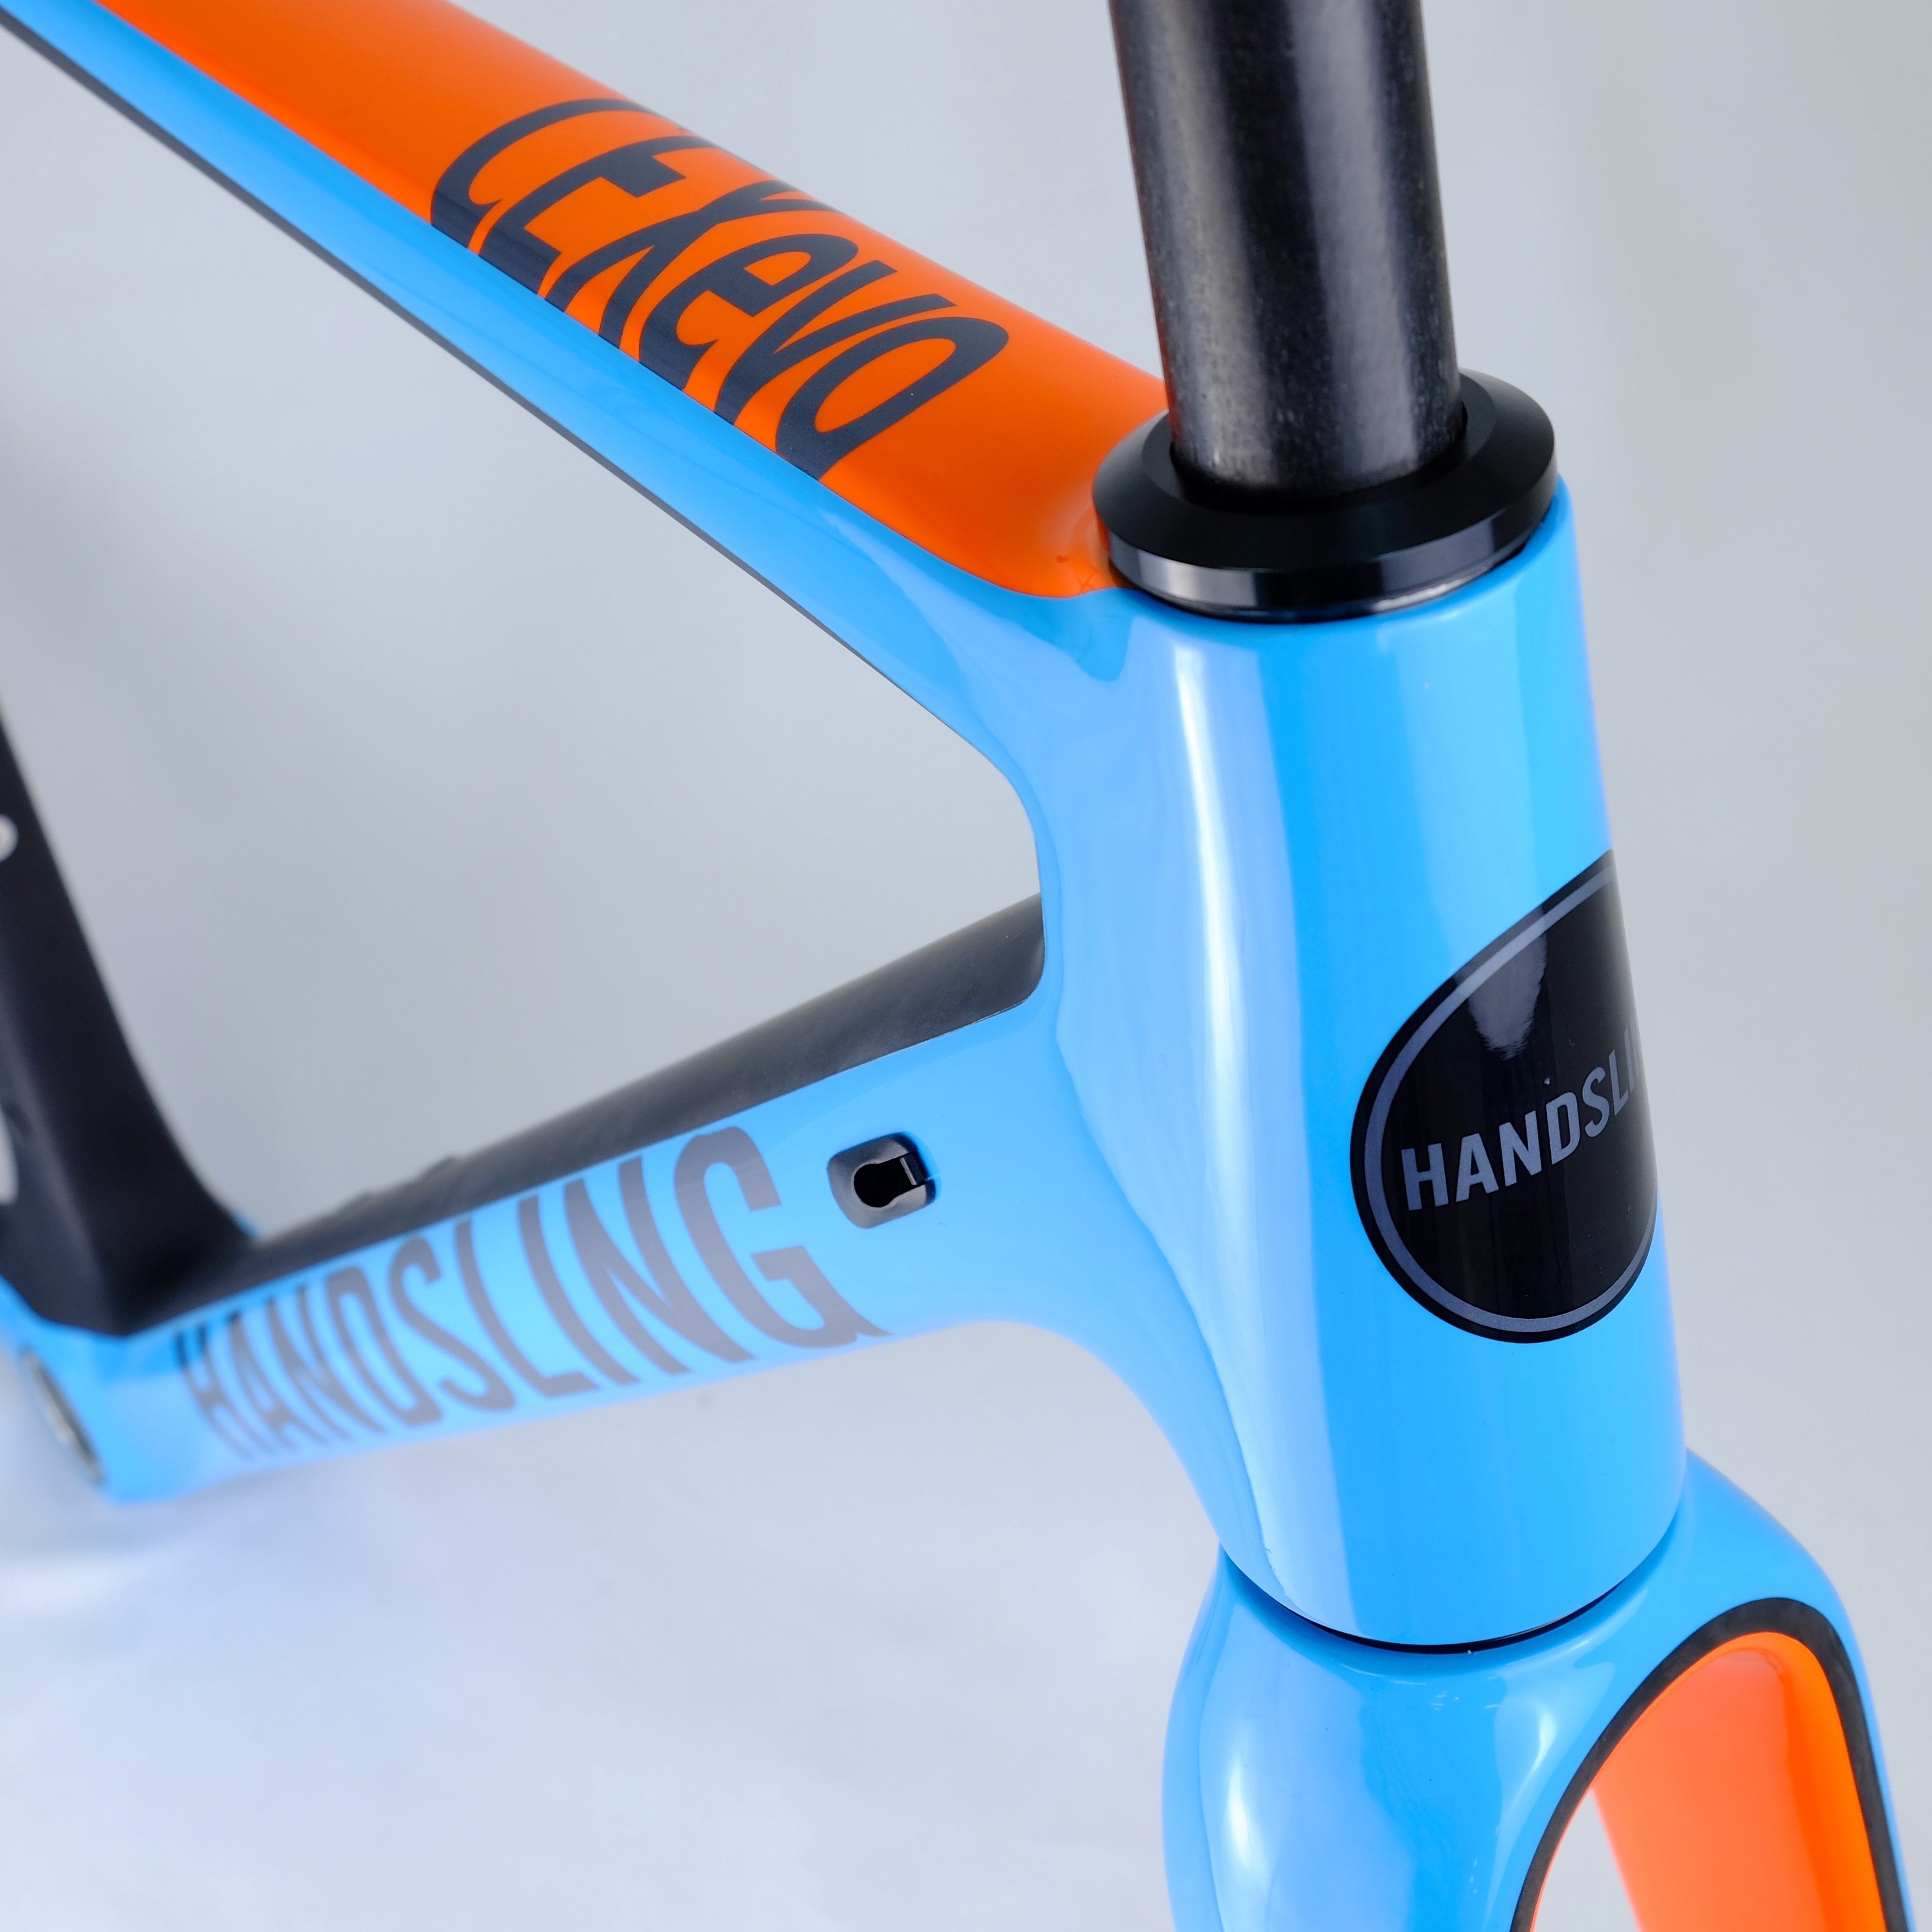 Handsling CEXevo frame - Team Blue and Orange